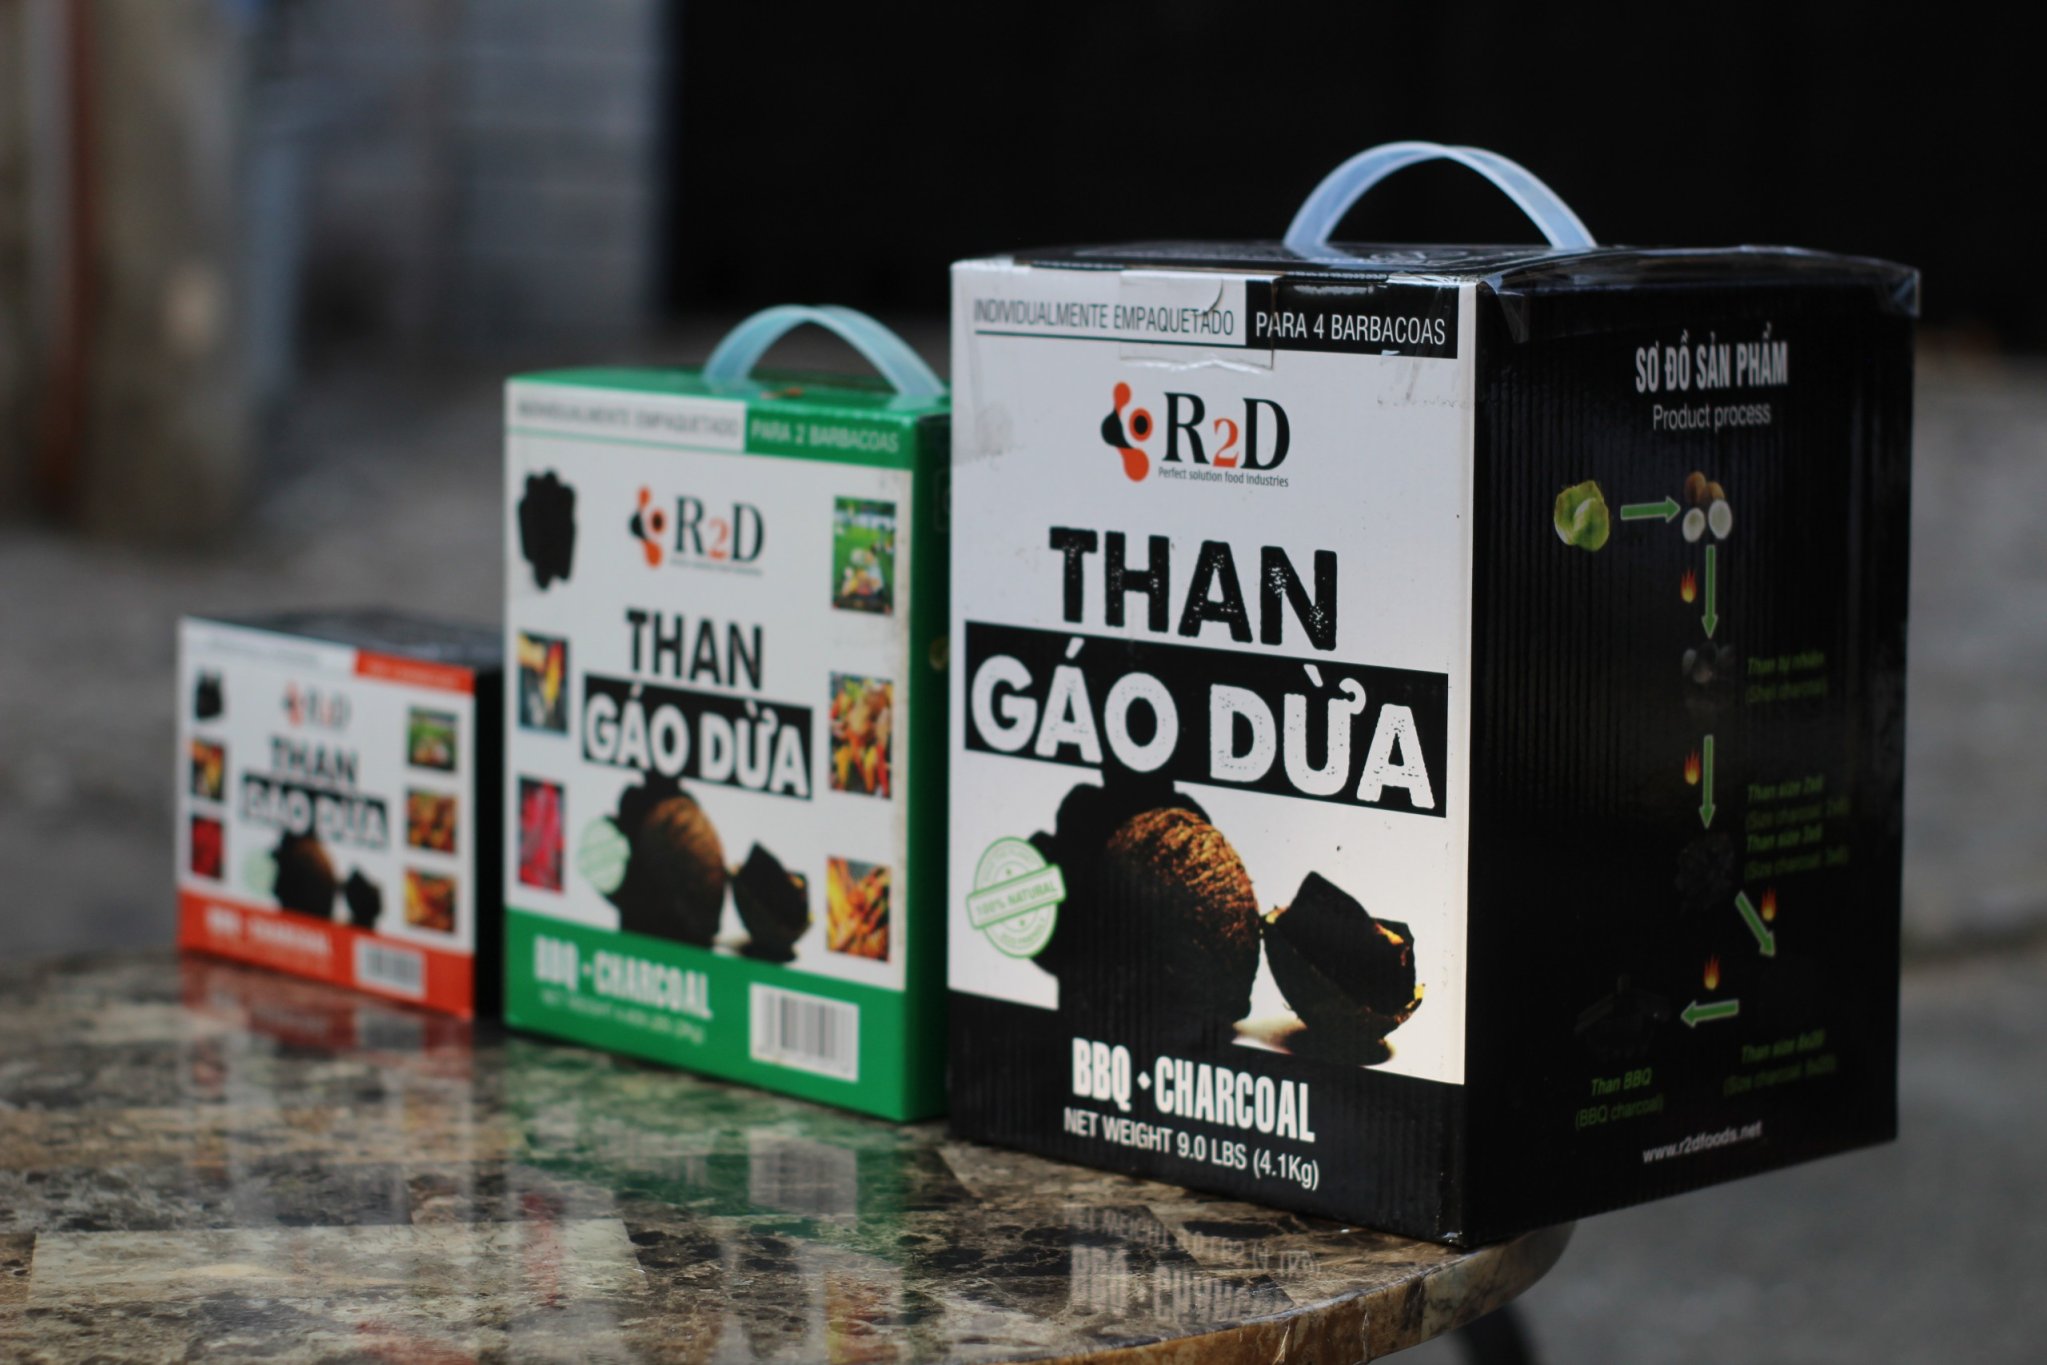 Hình ảnh Combo 3 hộp than không khói làm từ Gáo dừa chính hãng R2D dùng cho tiệc nướng BBQ (tổng 7 kg than) an toàn cho sức khoẻ